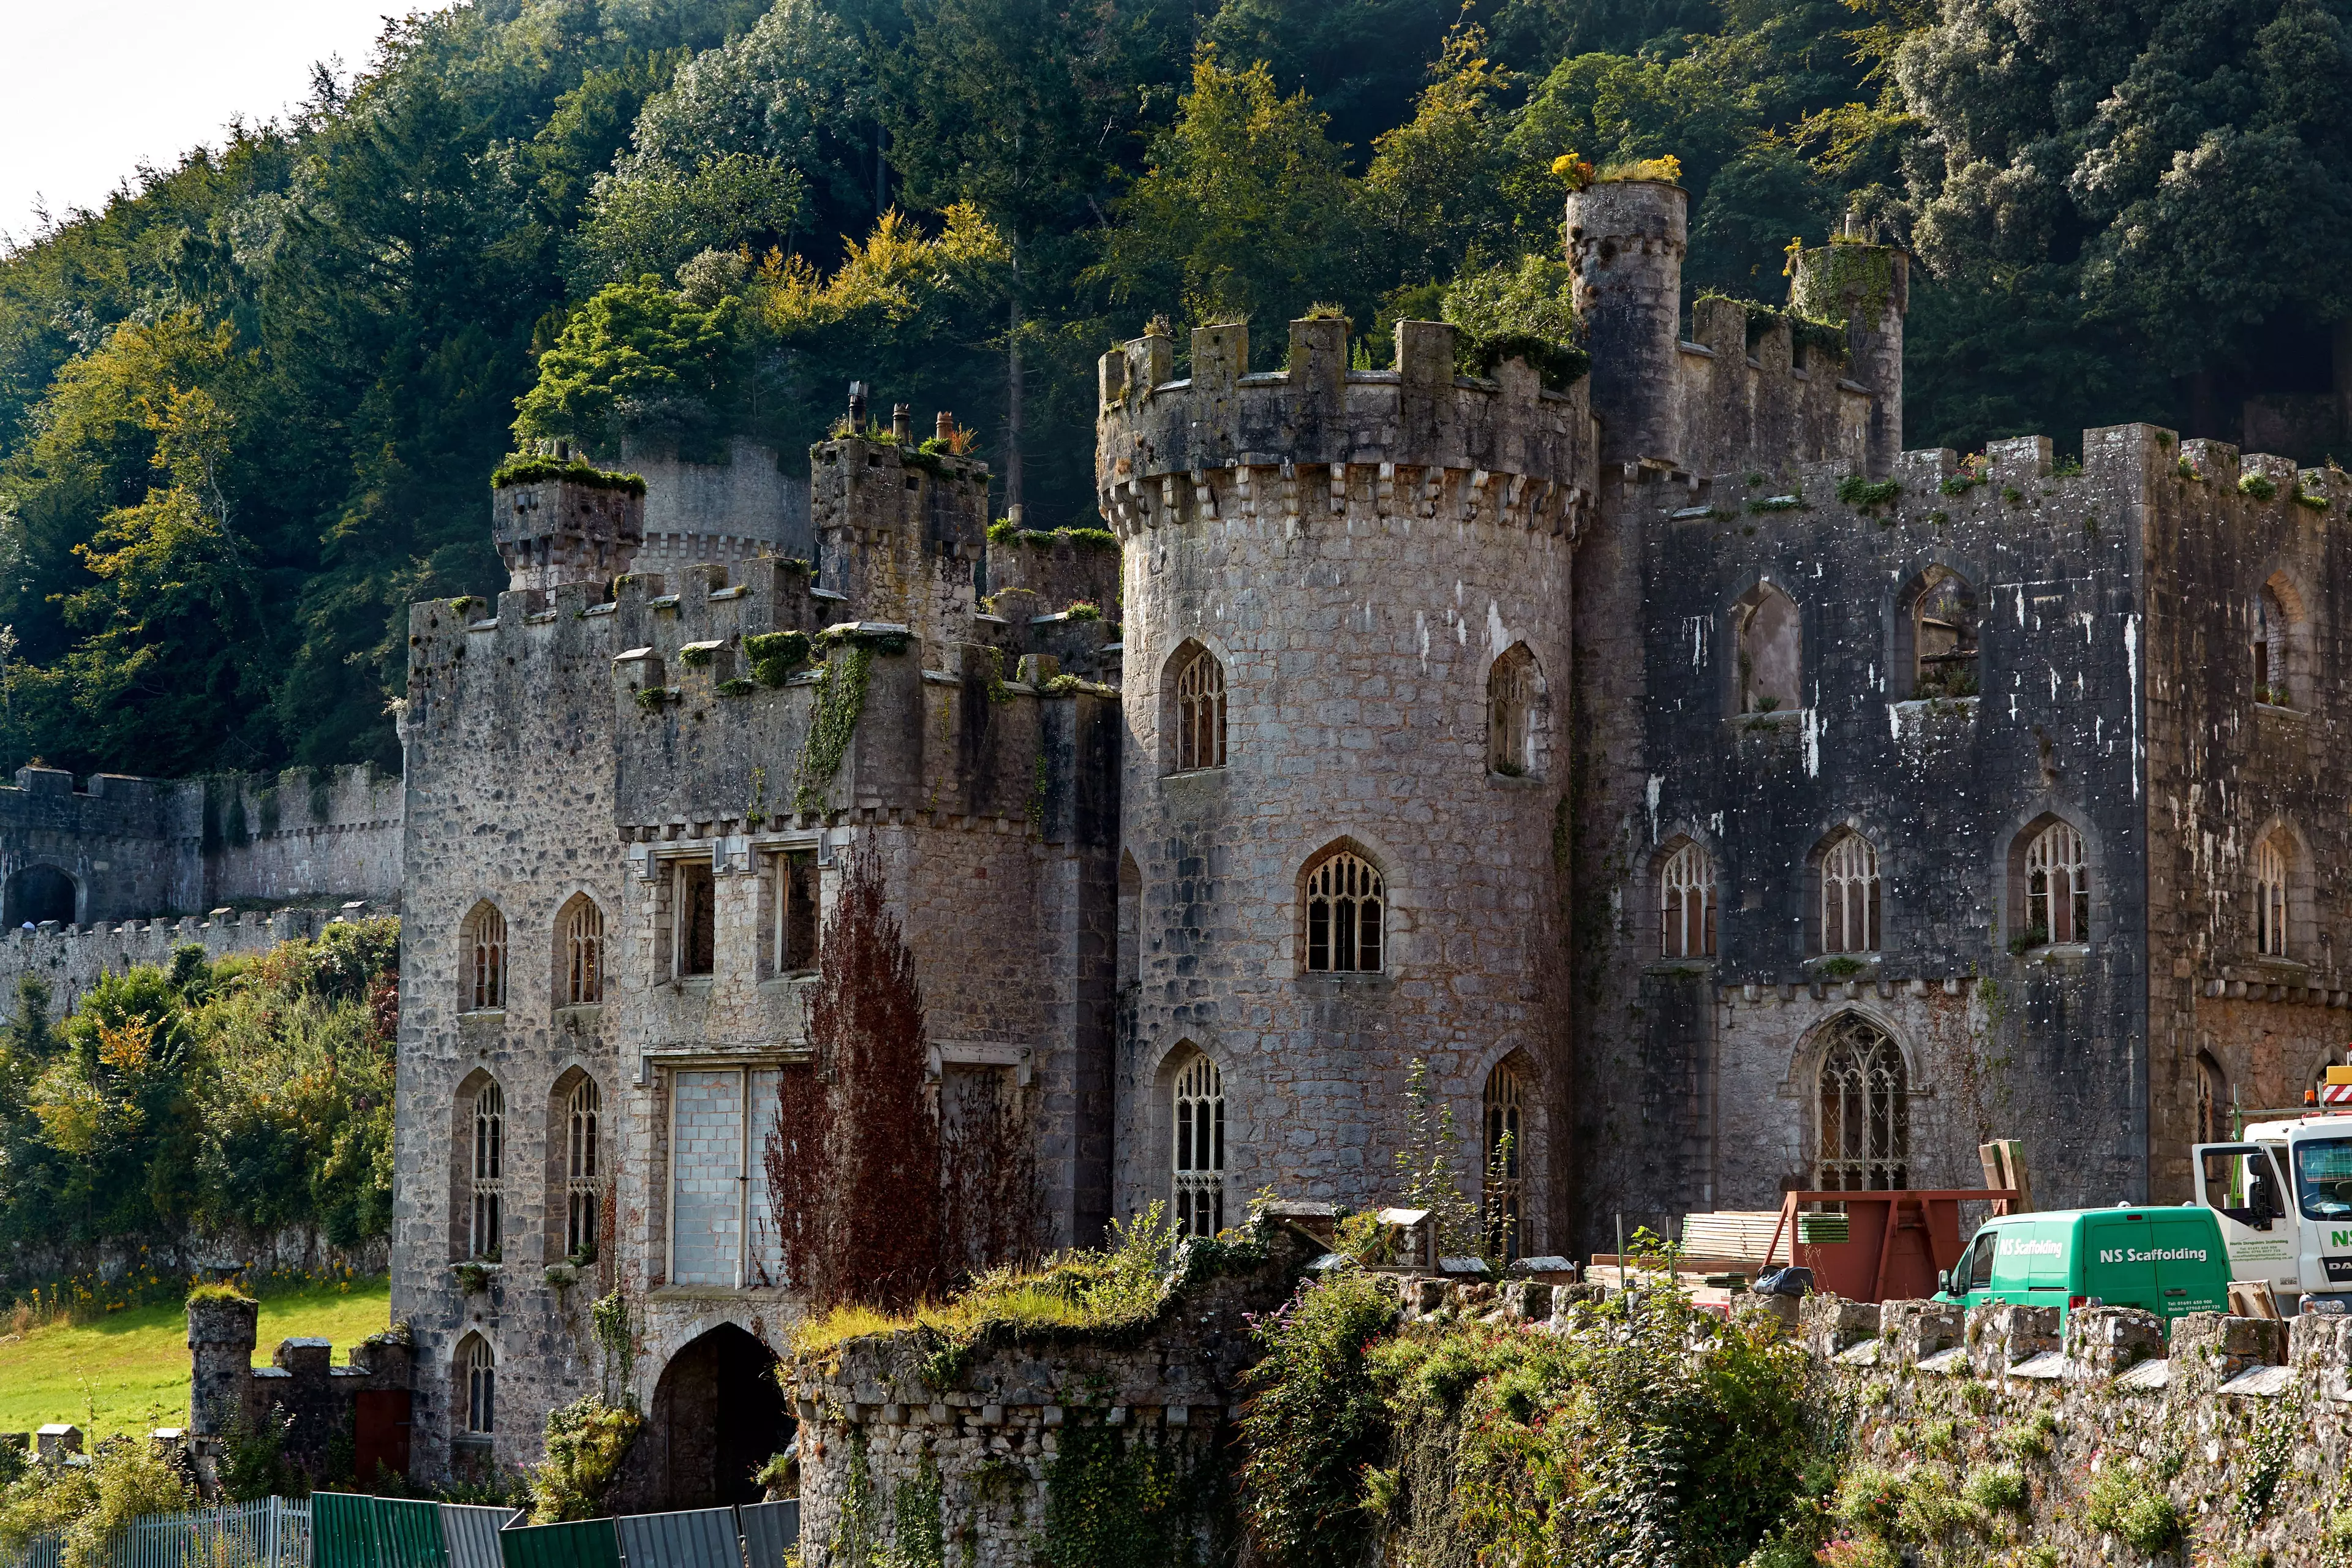 Gwyrch Castle was the home of I'm A Celeb last year (